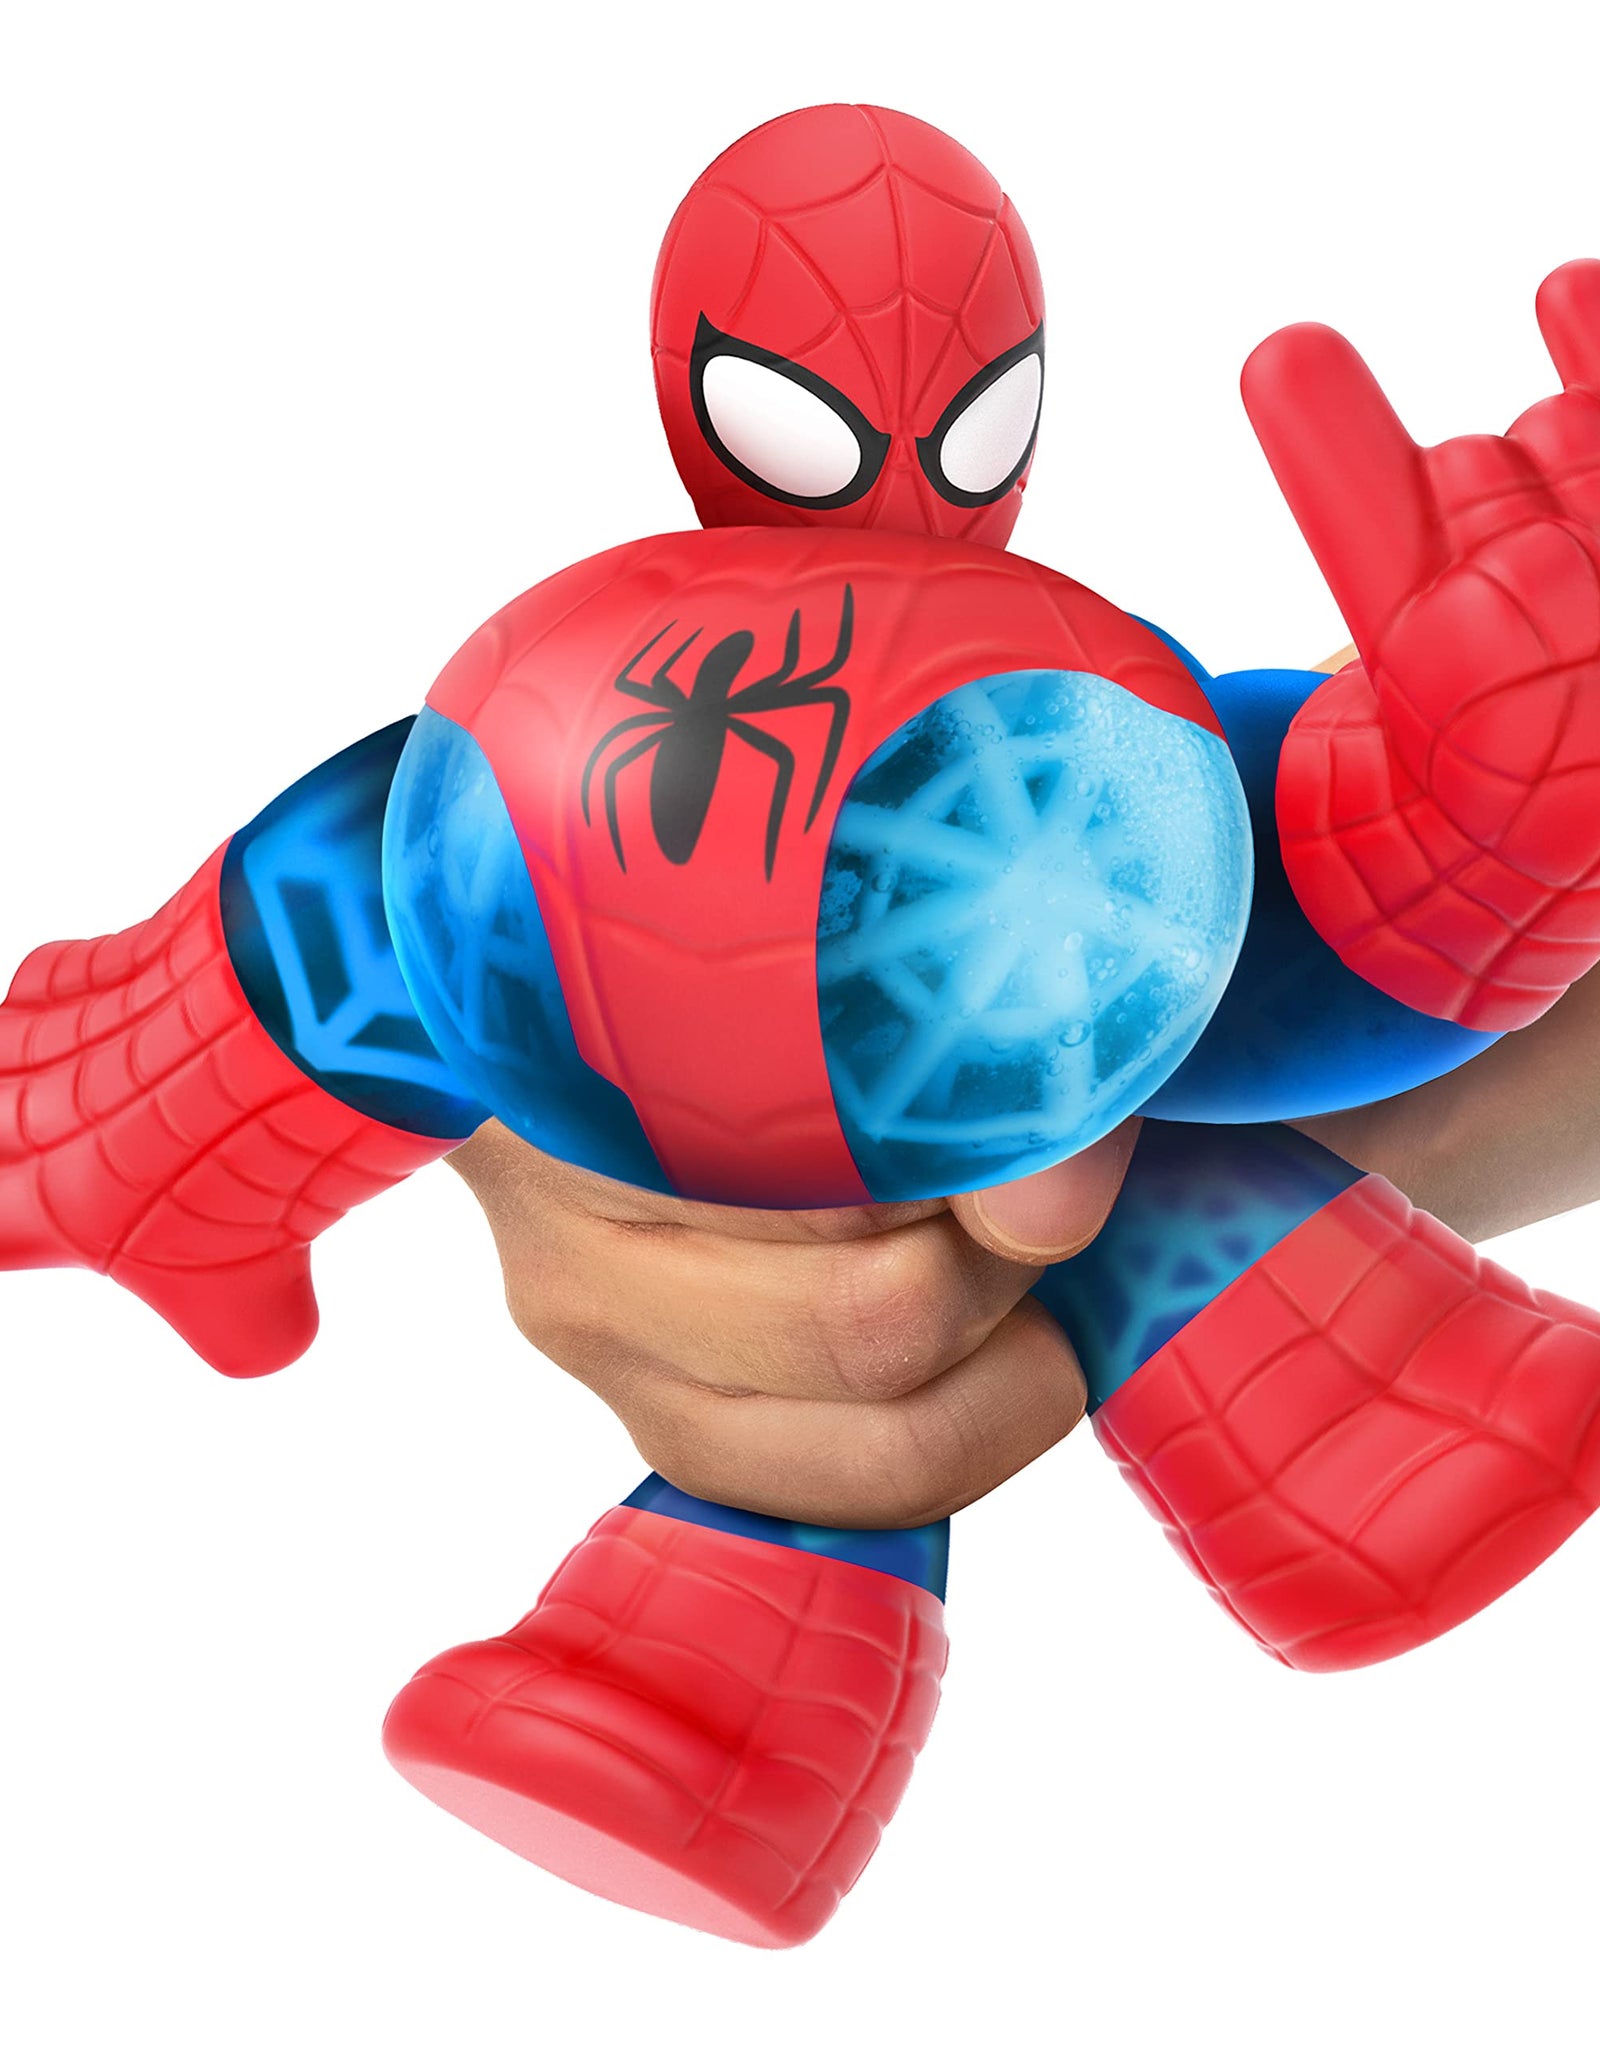 Heroes of Goo Jit Zu Licensed Marvel Versus Pack - Spider-Man vs Venom